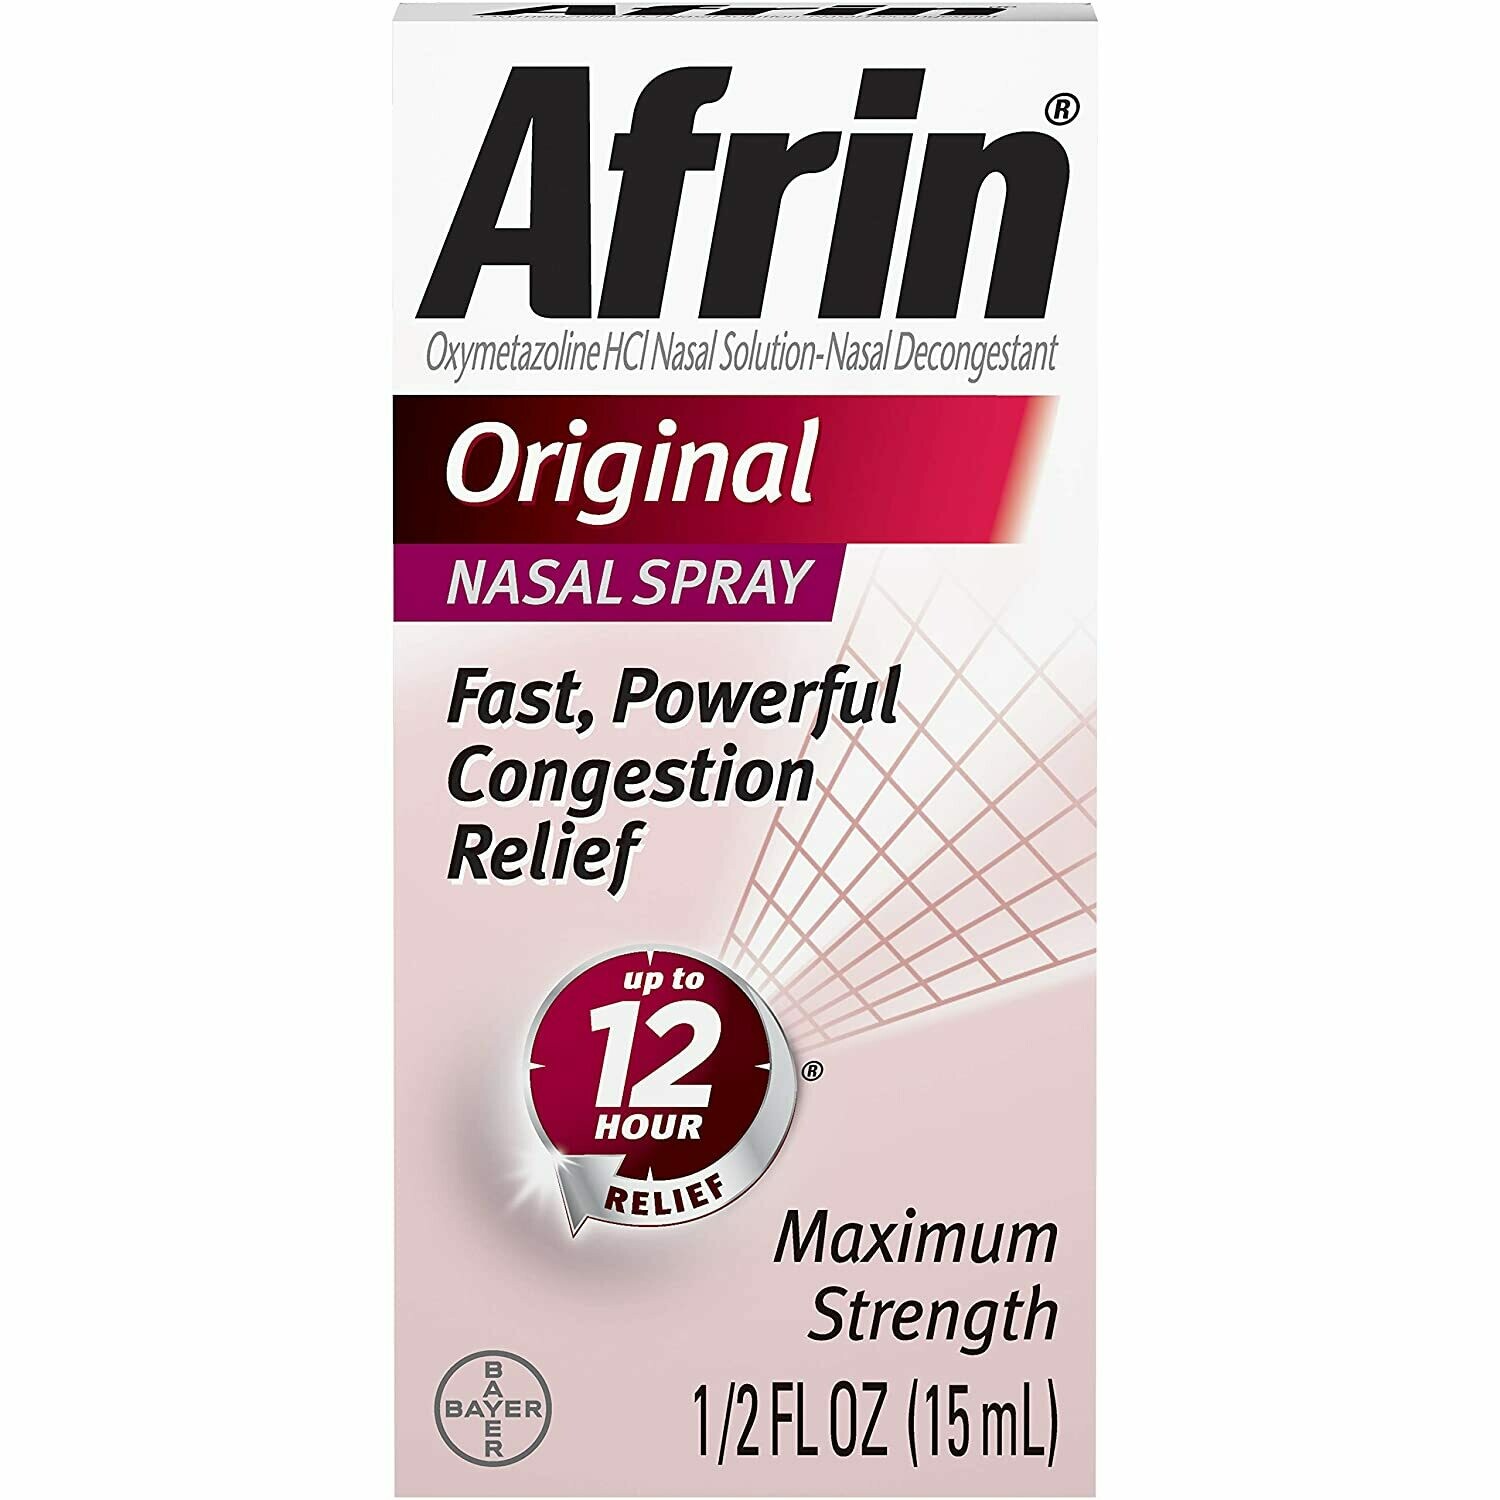 Afrin Original Nasal Spray